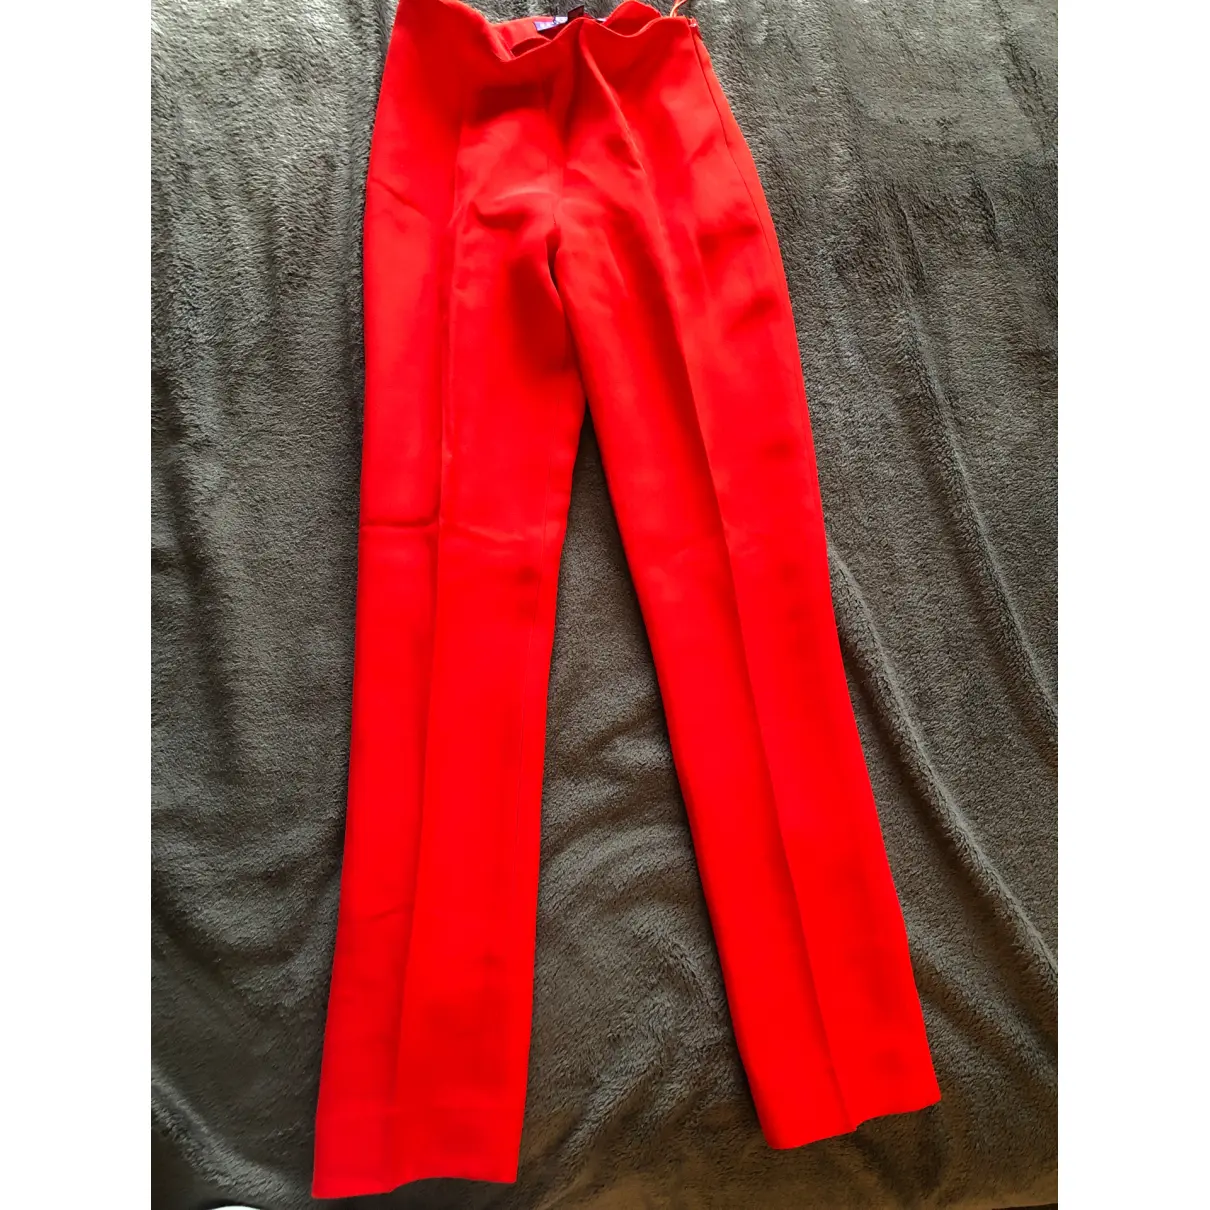 Buy Ralph Lauren Collection Trousers online